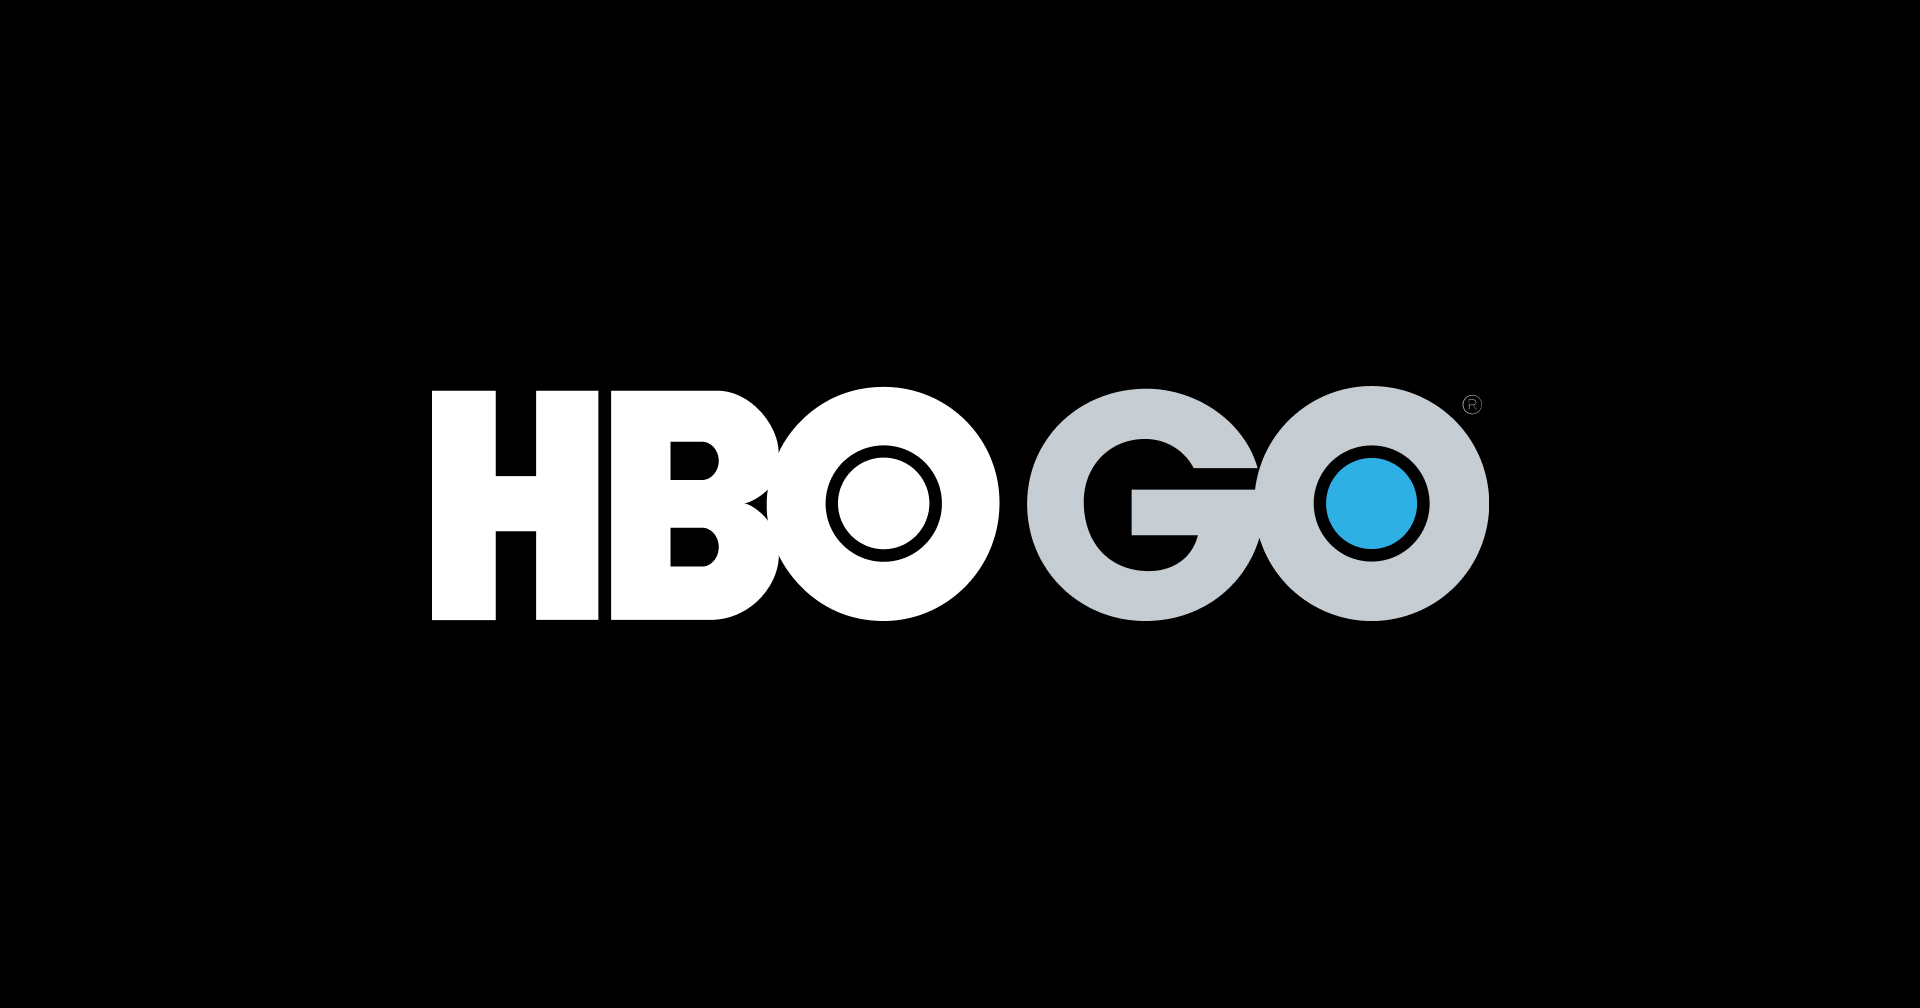 เทรนด์มันกำลังขึ้น!! HBO GO ประกาศขึ้นราคา เดือนละ 199 บาท เหมาปี 1,190 บาท เริ่ม 1 สิงหาคมนี้